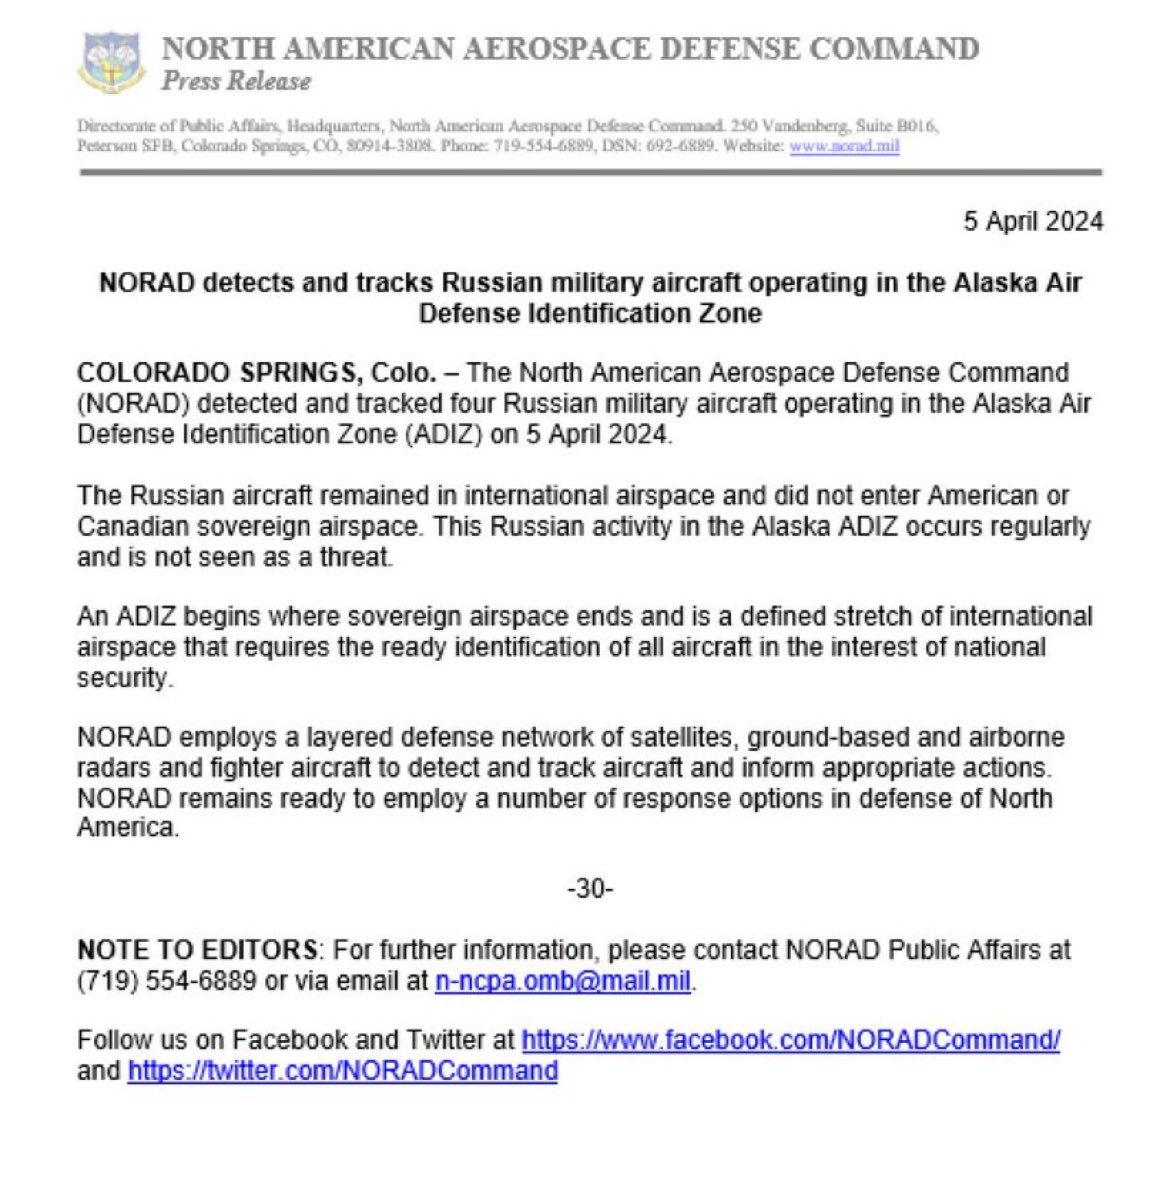 🇺🇸 | ÚLTIMA HORA: El Comando de Defensa Aeroespacial de Norteamérica (NORAD), ha detectado aviones militares rusos operando en la Zona de Identificación de Defensa Aérea de Alaska.